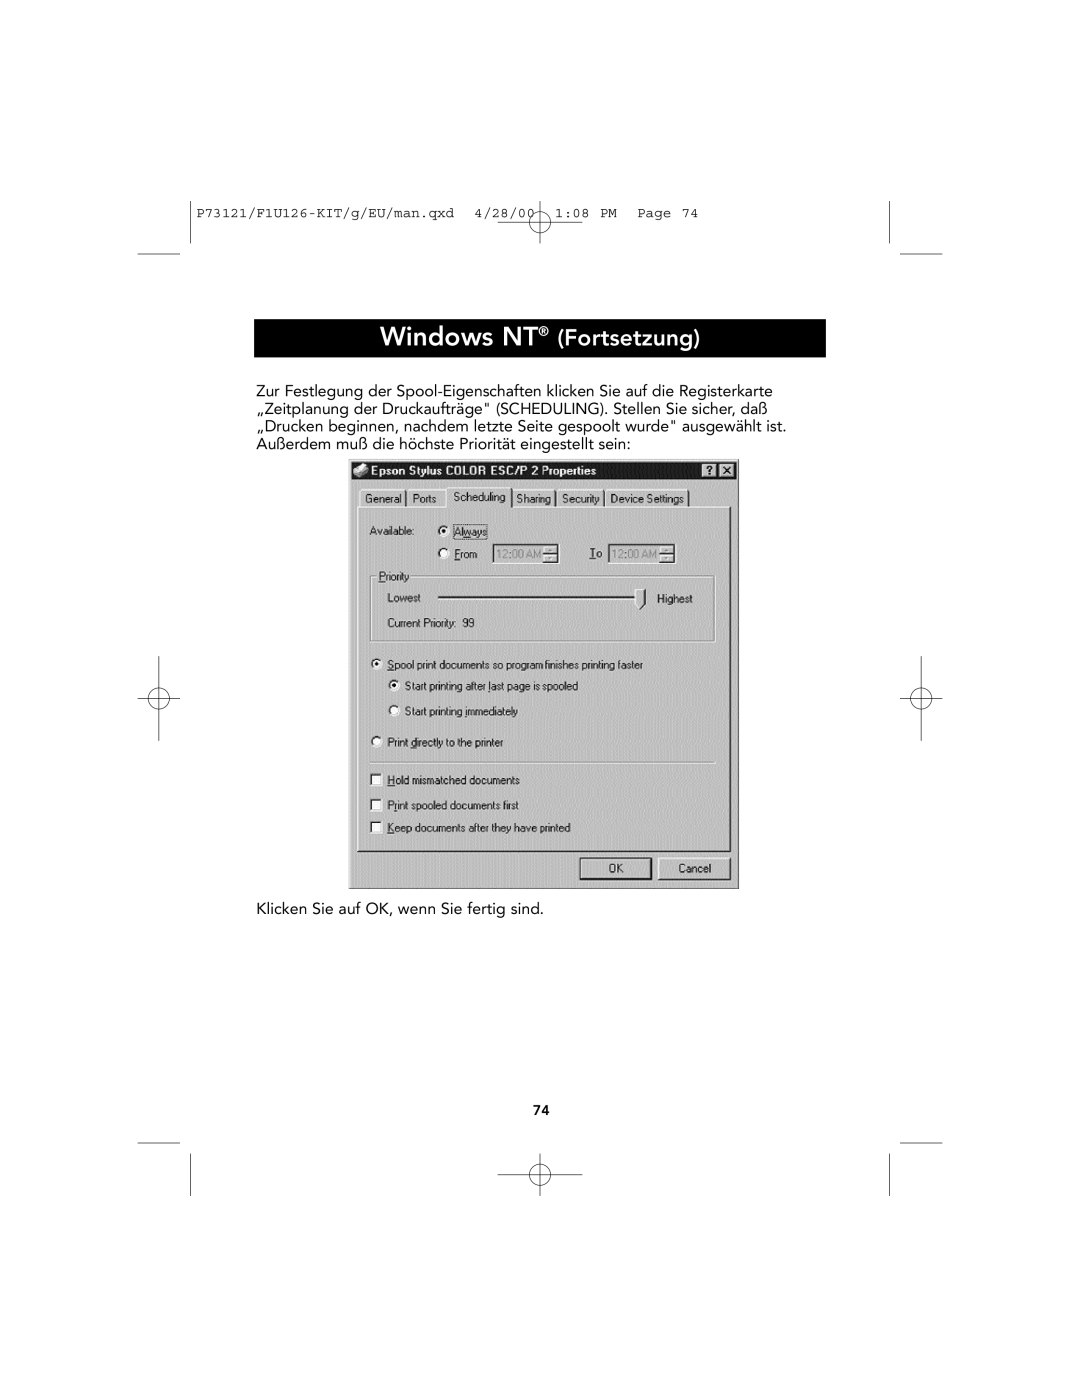 Belkin P73121, F1U126-KIT user manual Windows NT Fortsetzung, Klicken Sie auf OK, wenn Sie fertig sind 